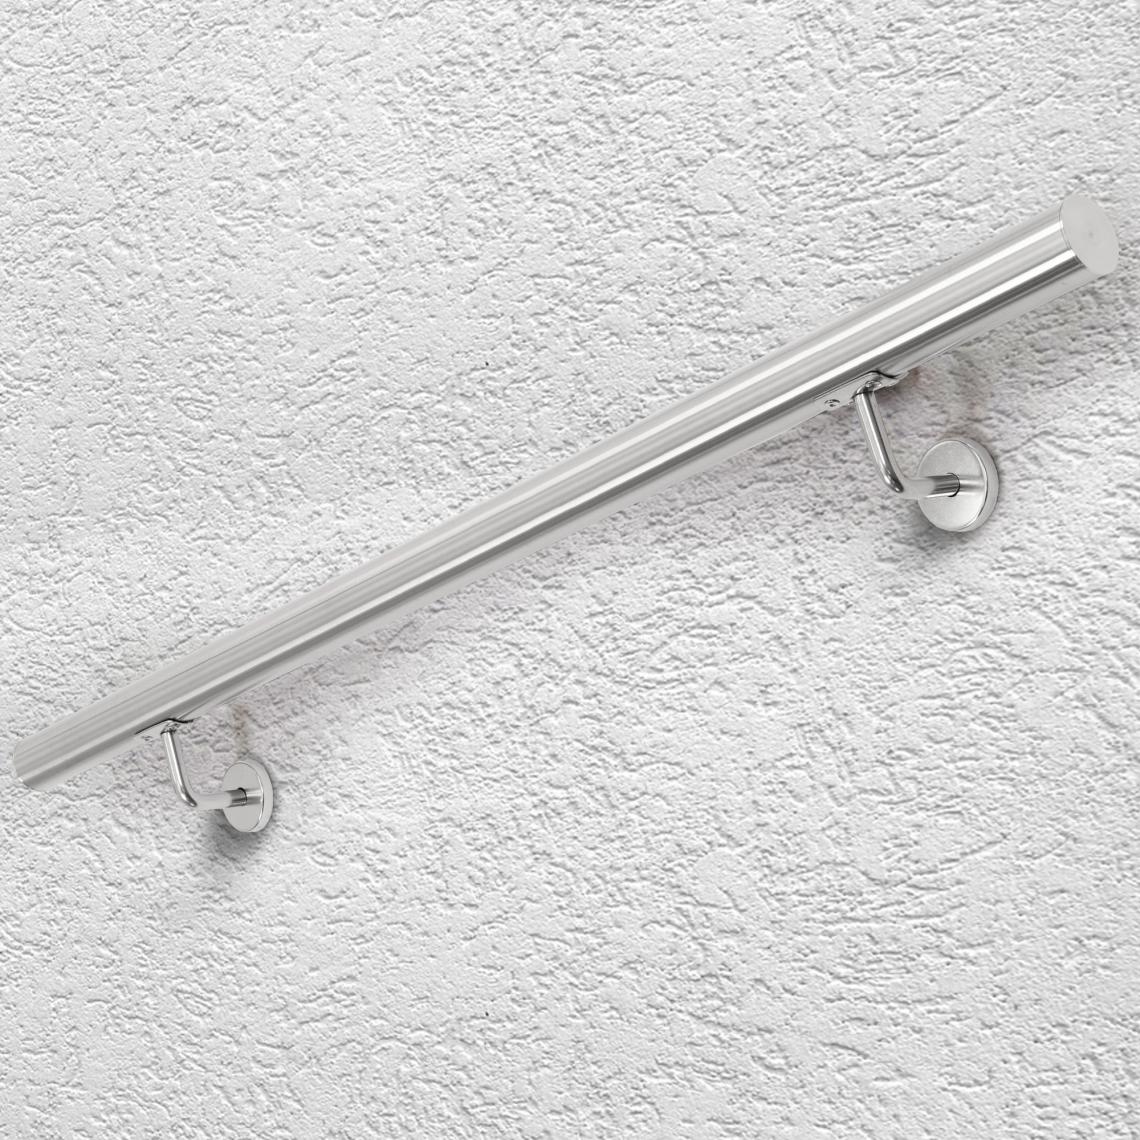 Ecd Germany - Main courante escalier en acier inoxydable rampe barre appui rambarde 100 cm - Escalier escamotable